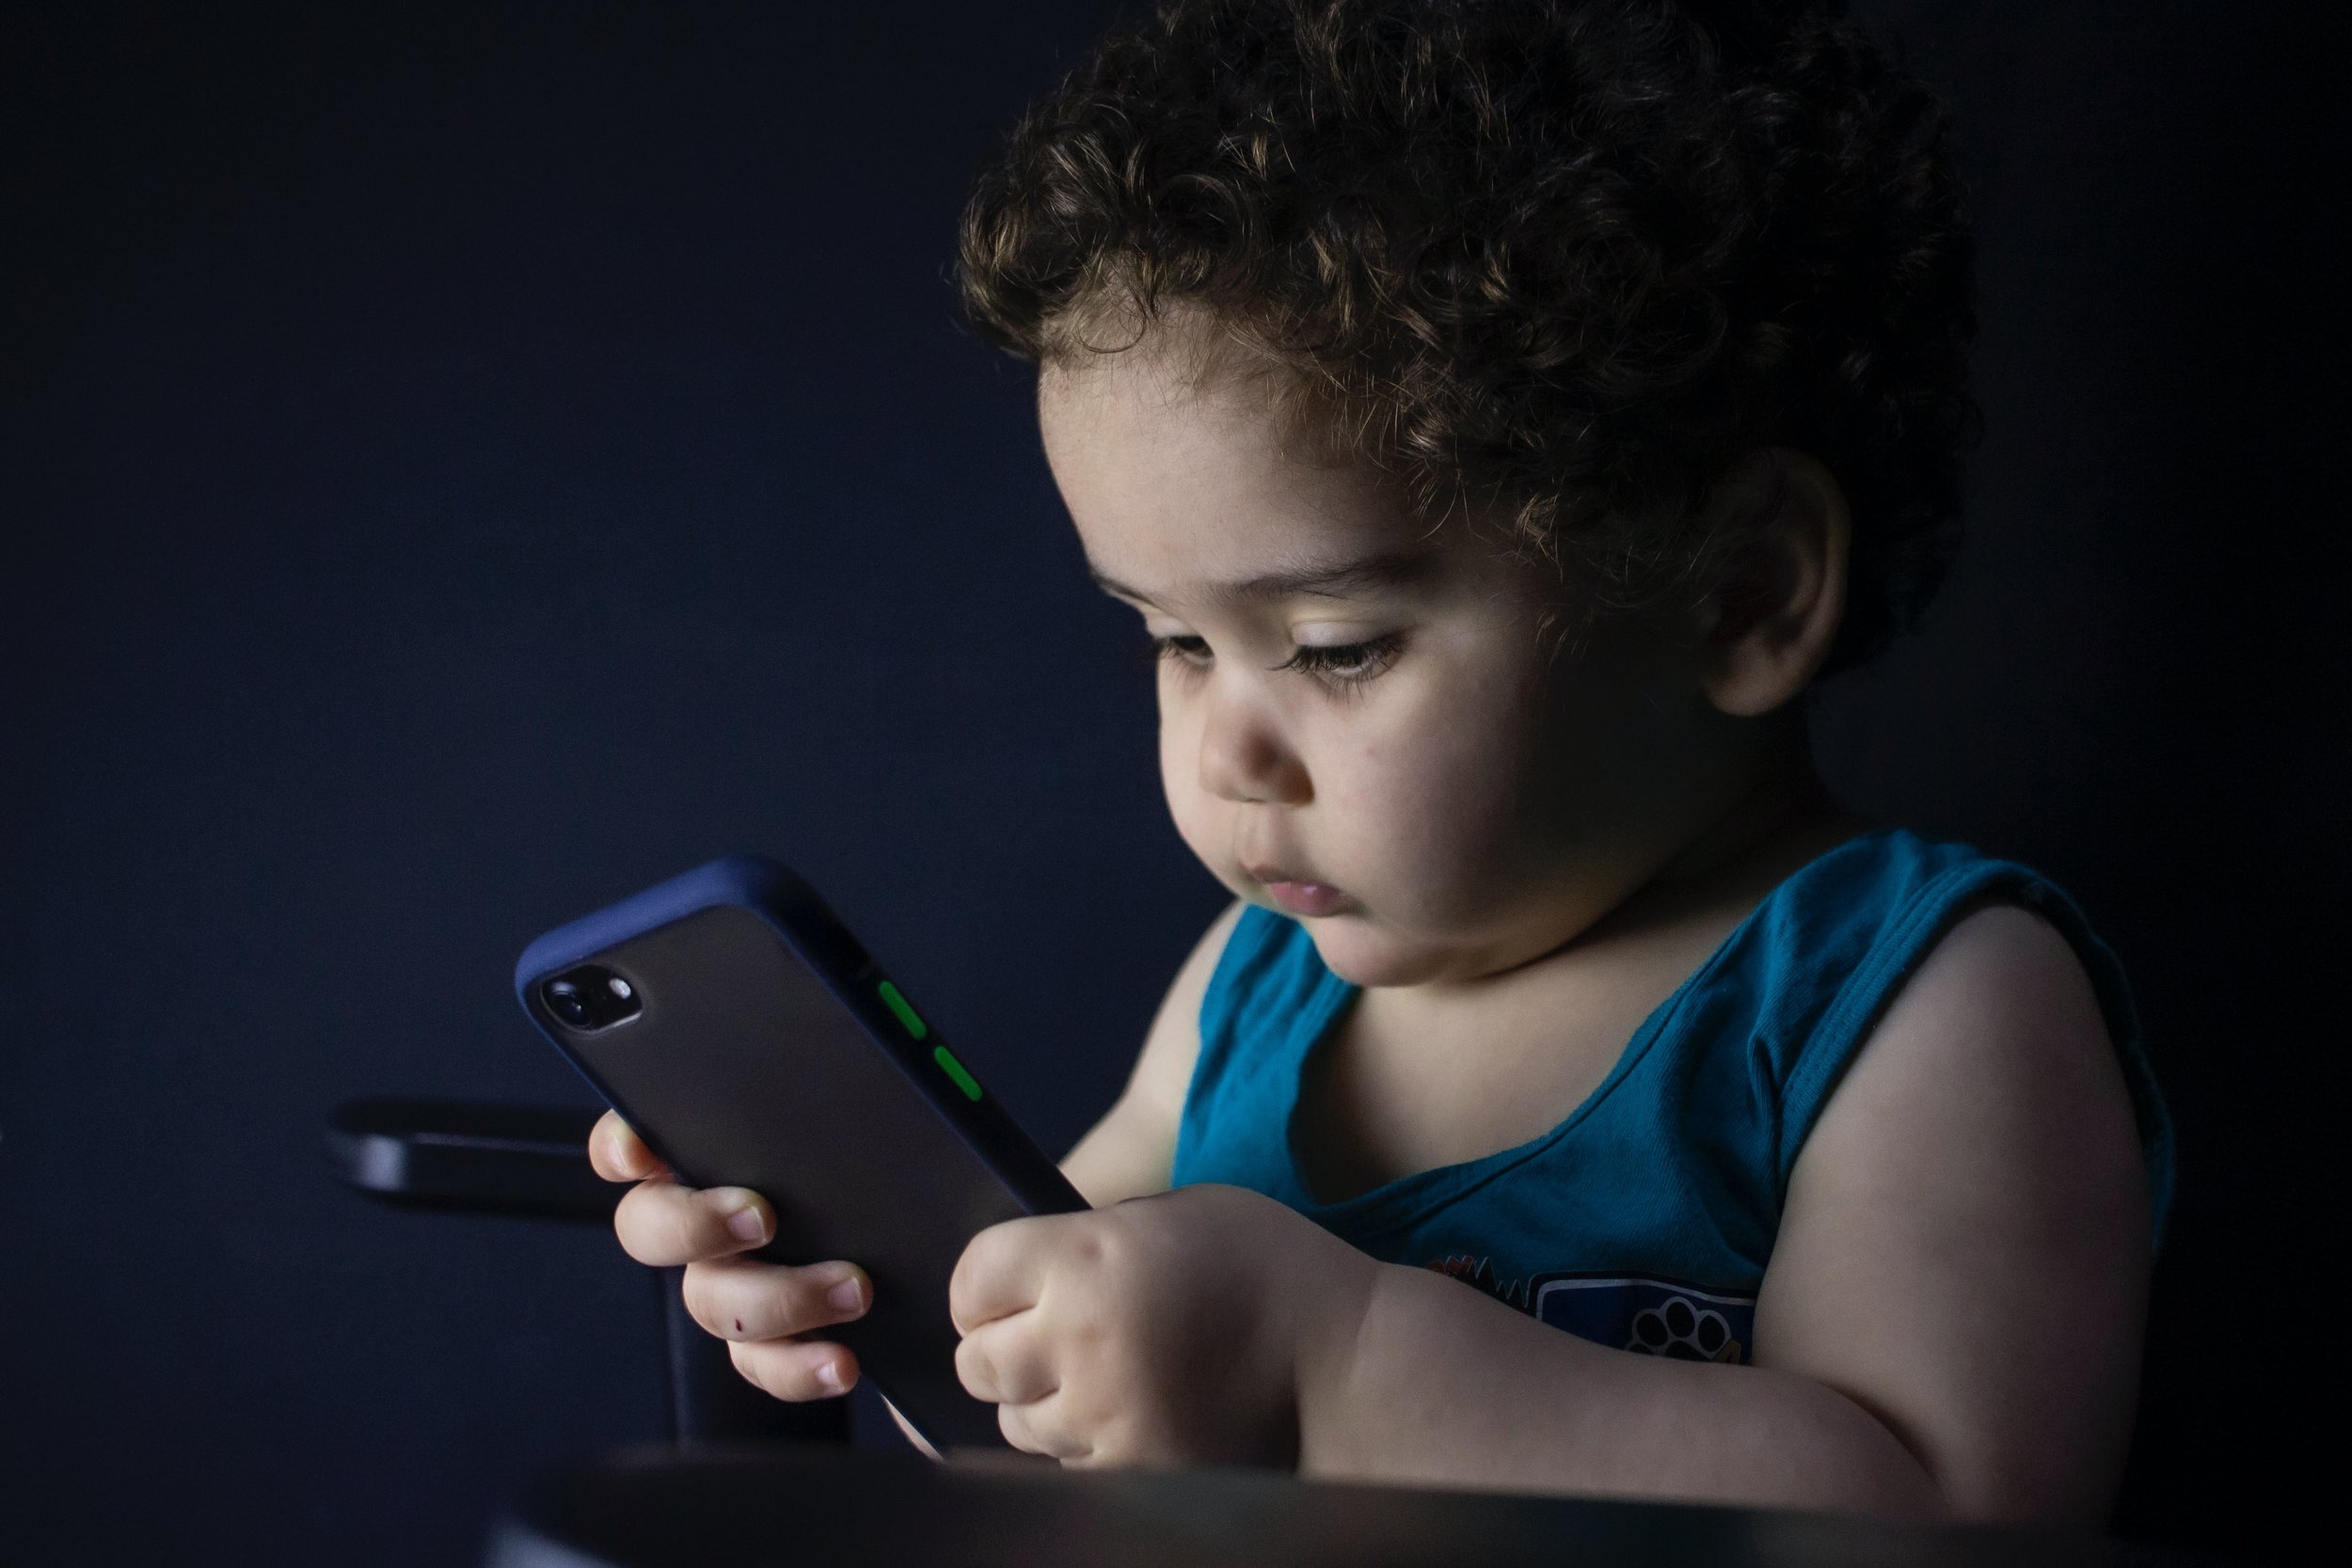 St-Louis: Il appâte un enfant avec un téléphone portable pour lui